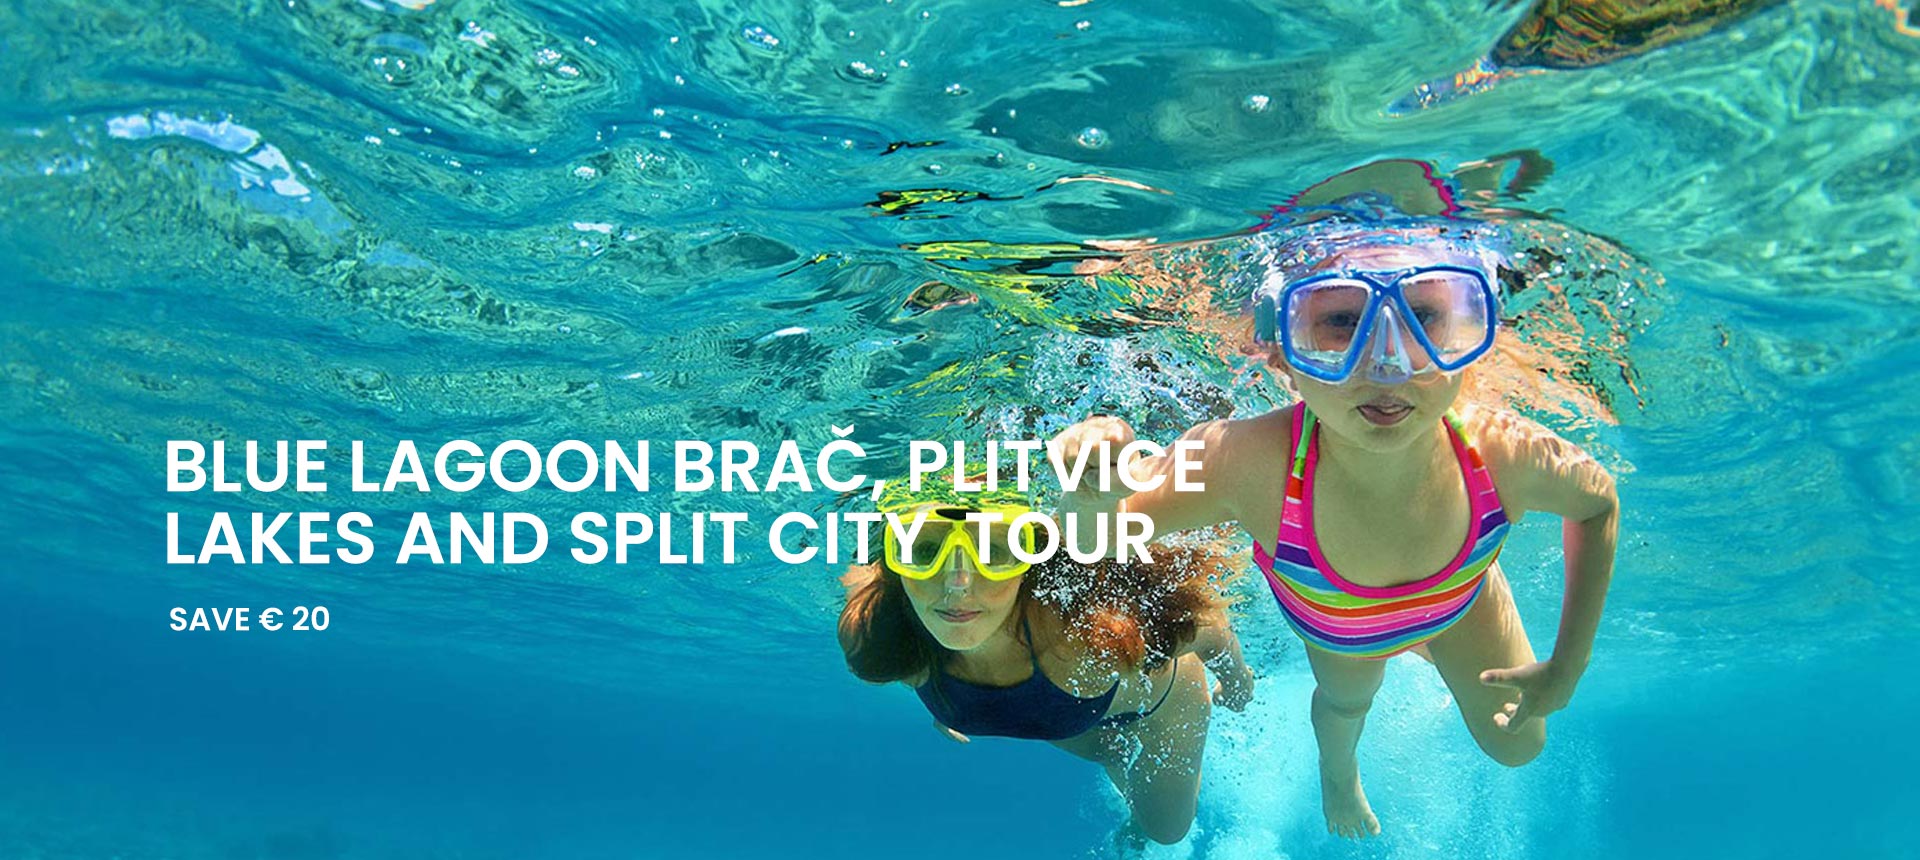 Super Combo Tour: Blue lagoon Brač, Plitvice lakes and Split city tour